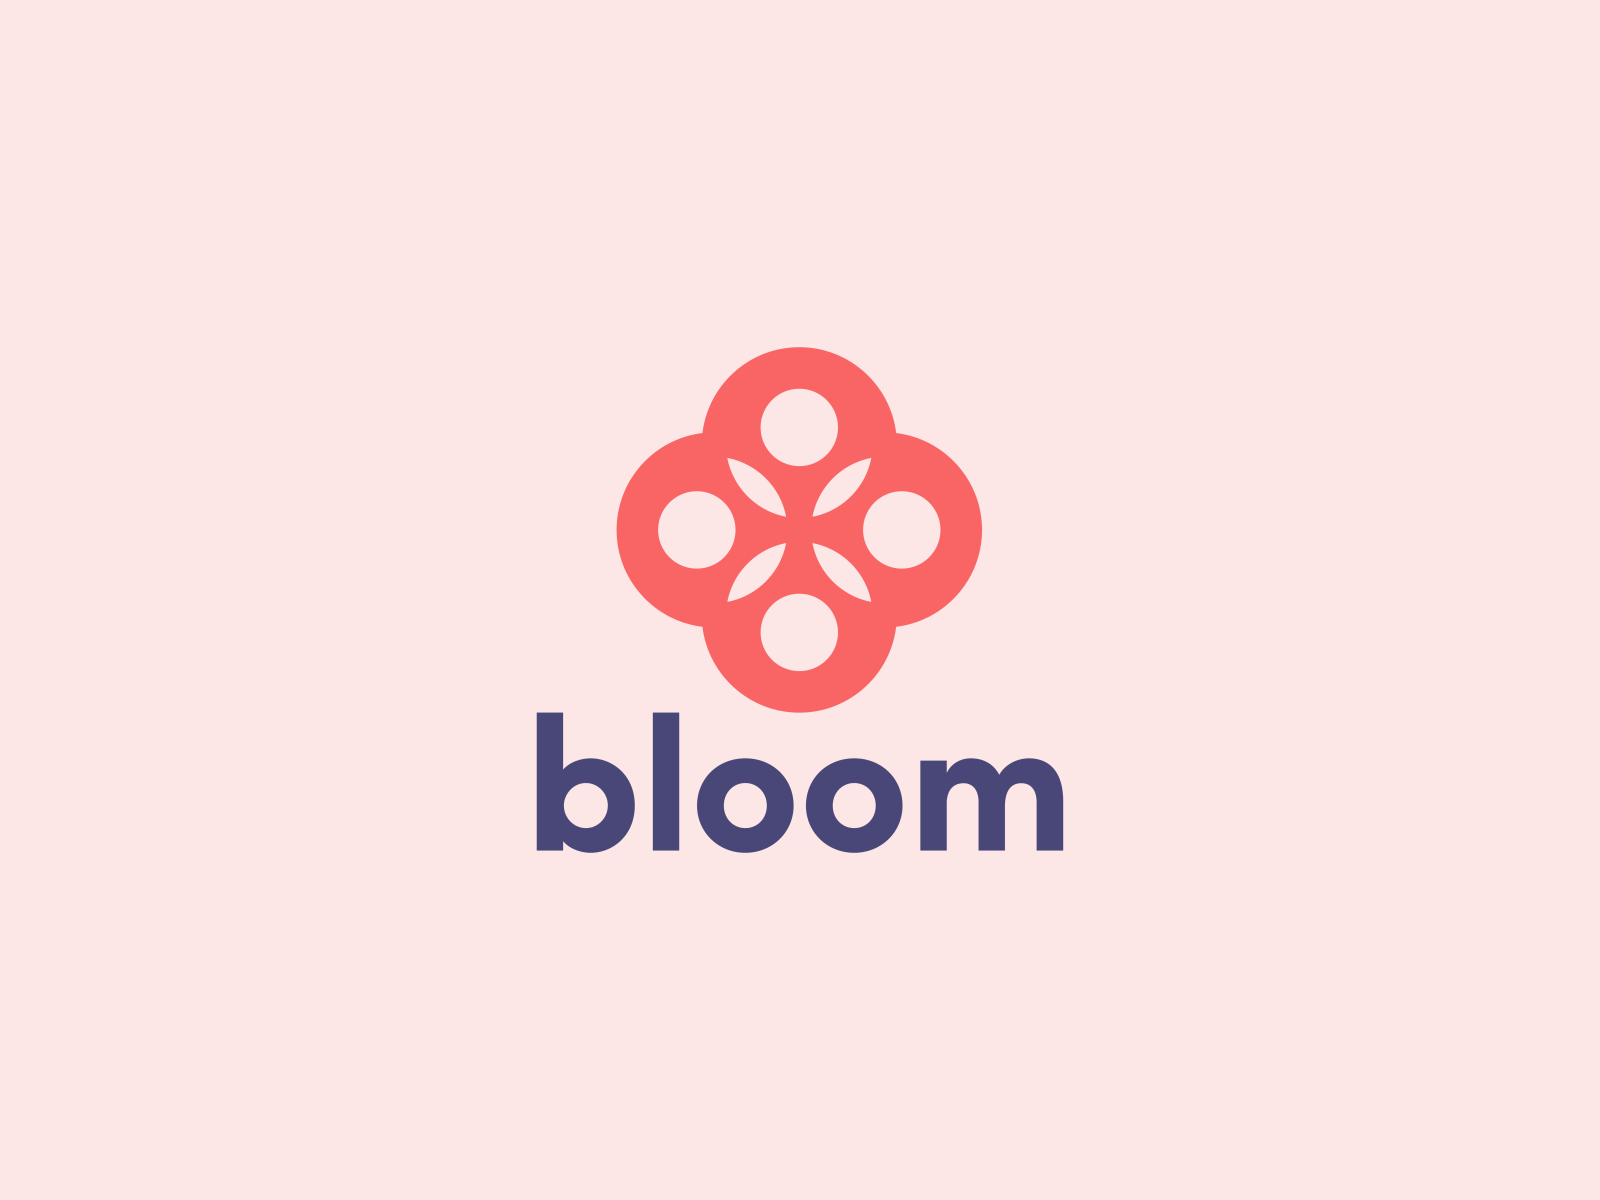 bloom medicinals logo